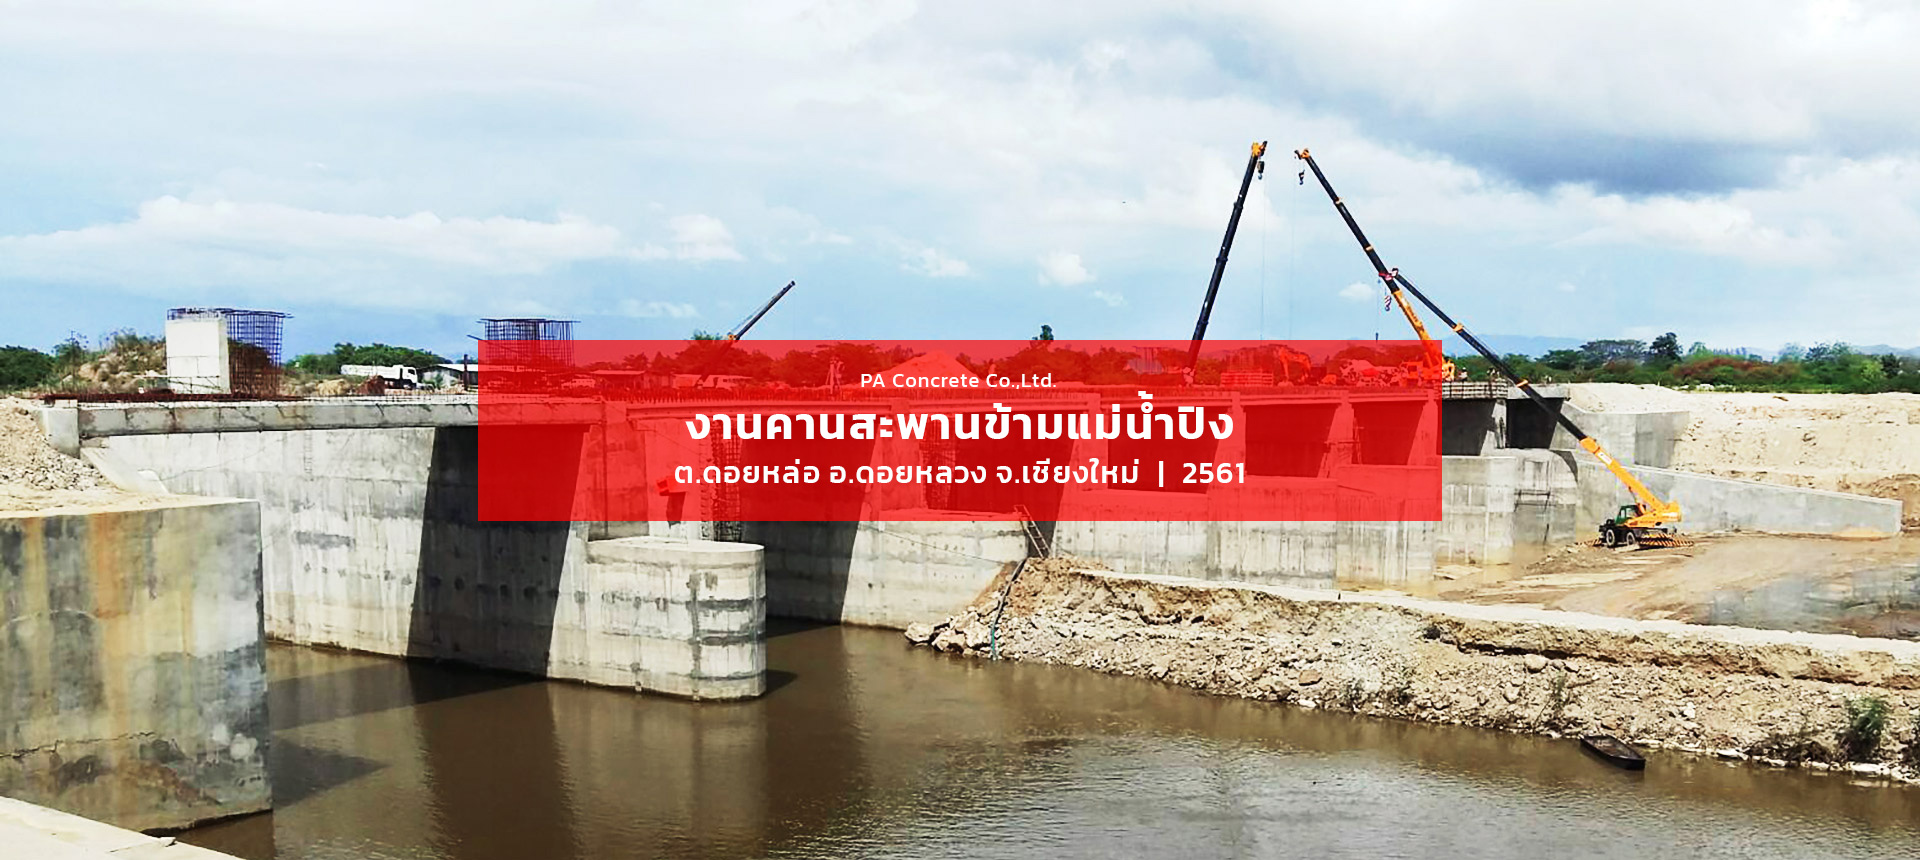 bridge-ping-river-our-work-PA-concrete